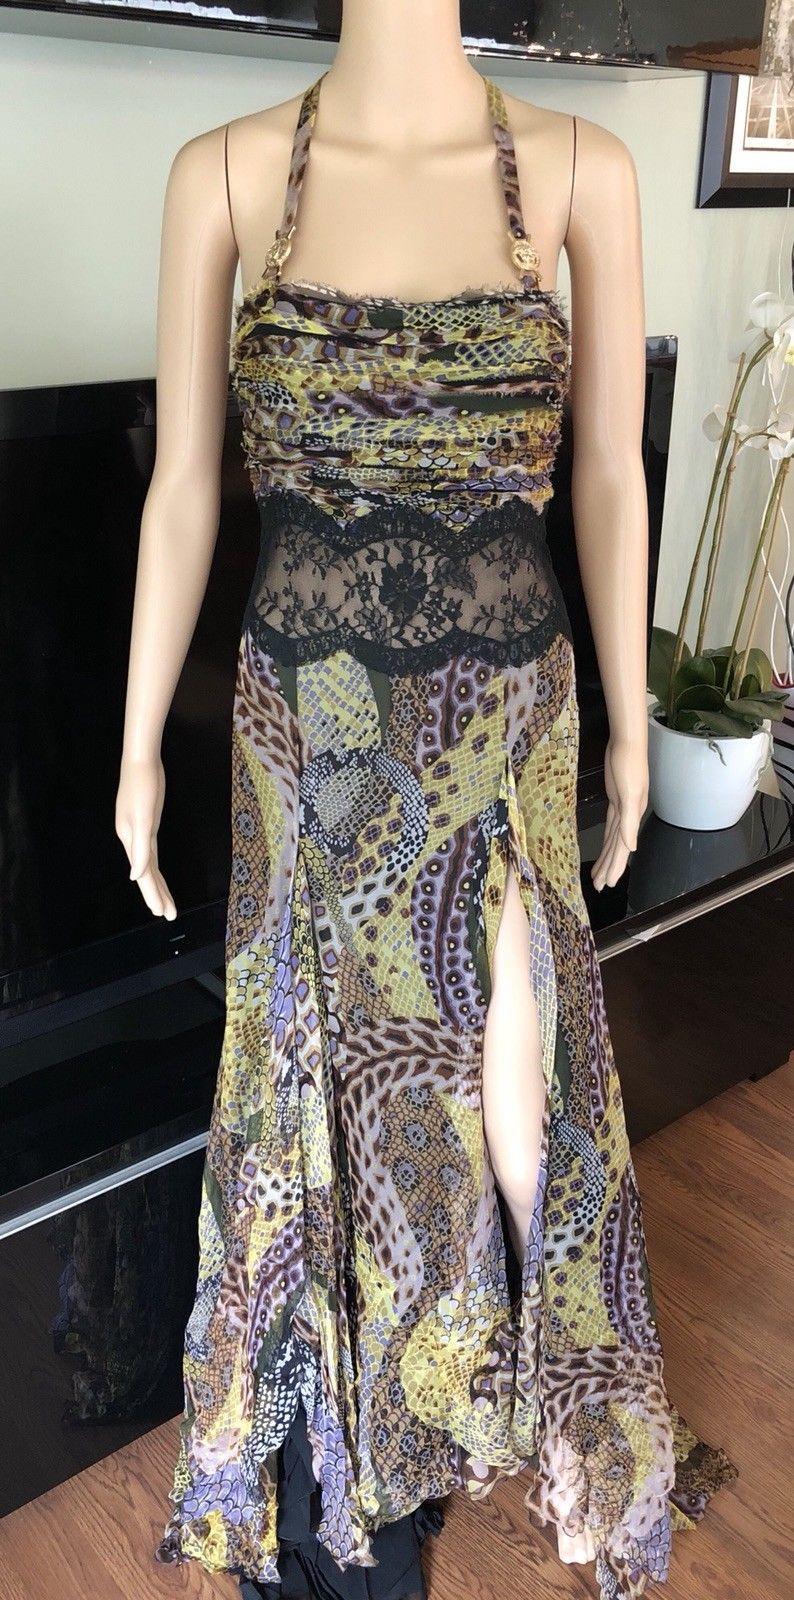 Versace F/W 2005 Tierdruck durchsichtige Spitze Panel offener Rücken Abendkleid Kleid IT 40

Abendkleid von Versace mit Spitzeneinsatz an der Taille, tonalen Nähten und seitlichem Reißverschluss.

Über Versace: Das 1978 von dem verstorbenen Gianni